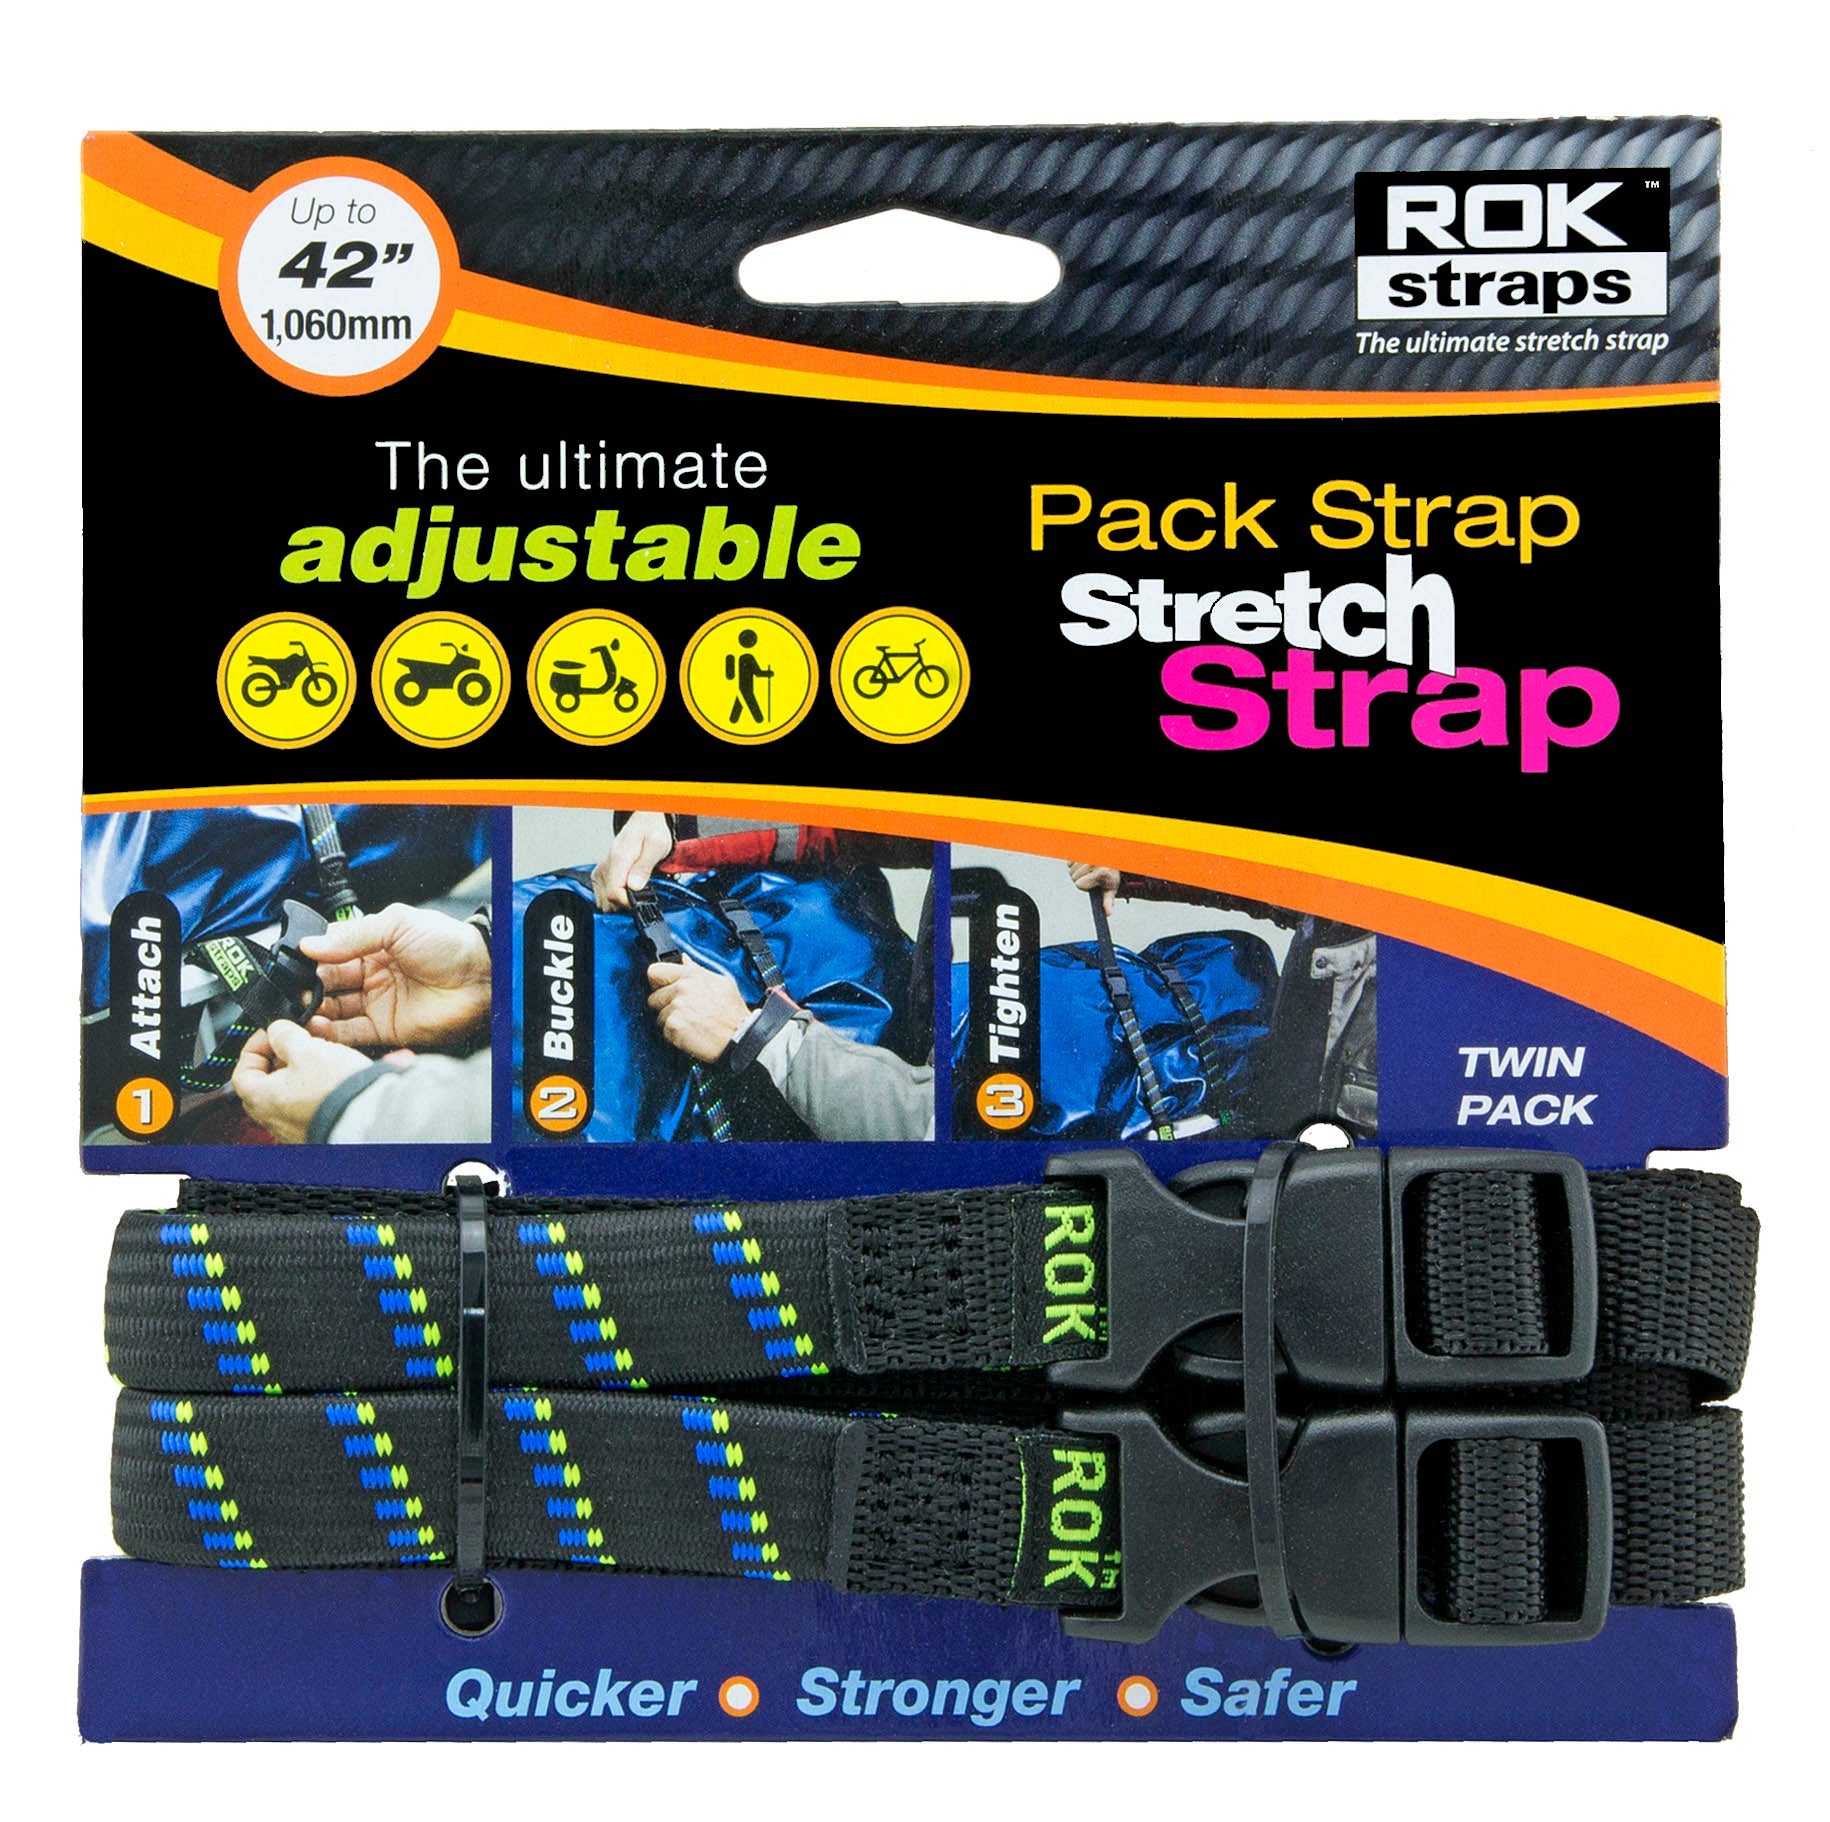 Pack Strap Stretch Strap - 42 Jungle Green - Rok Straps Canada